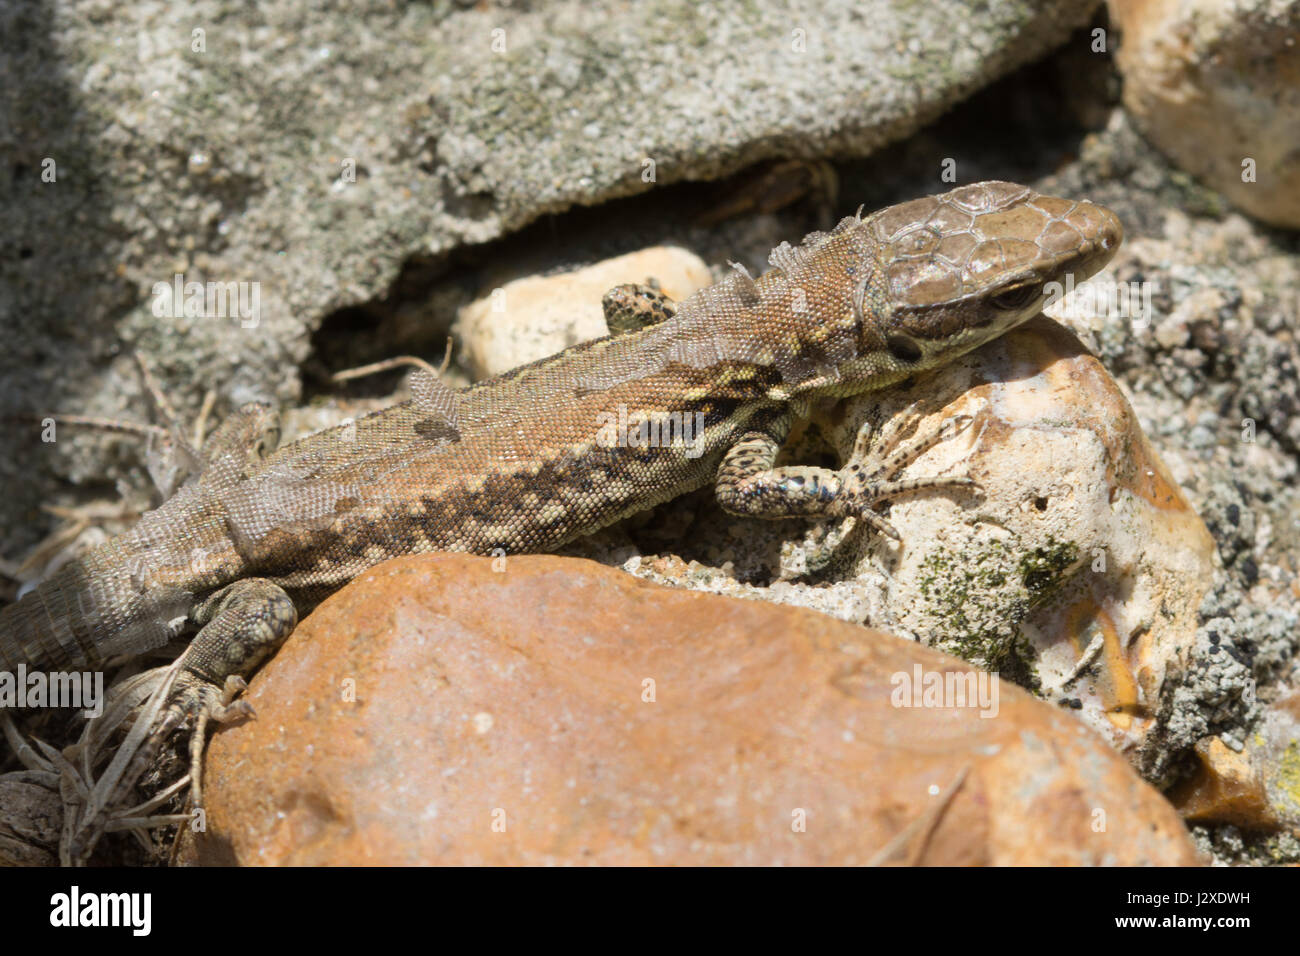 Mauereidechse (Podarcis Muralis), eine nicht-heimische Reptilienarten - Mitglied eine eingeführte Kolonie auf Boscombe Cliffs in Dorset, Großbritannien Stockfoto